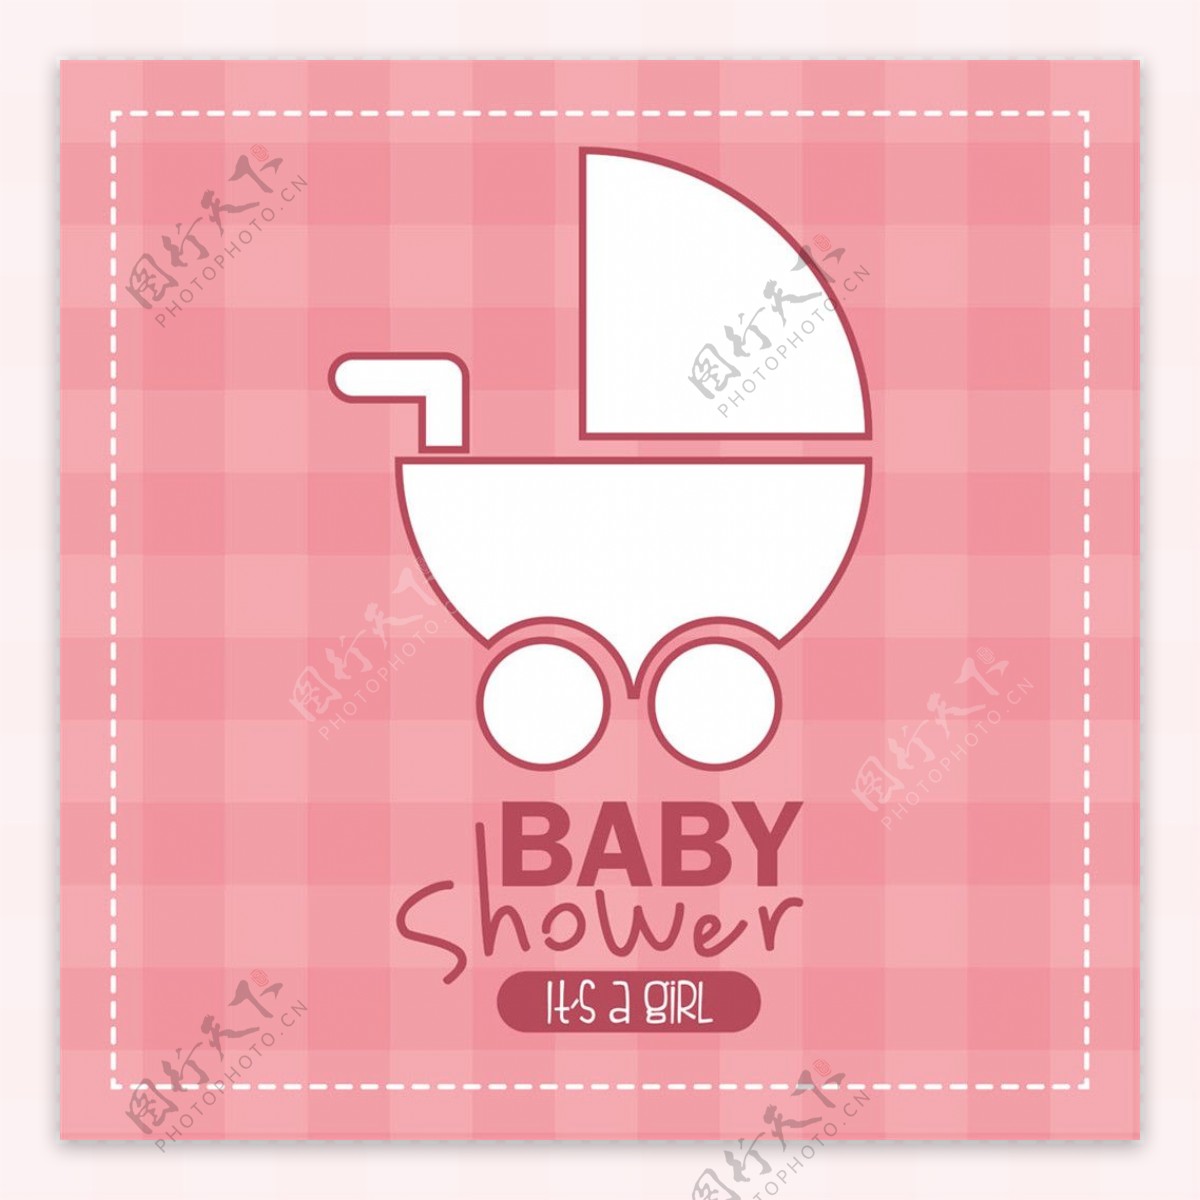 婴儿车淋浴卡请帖图片